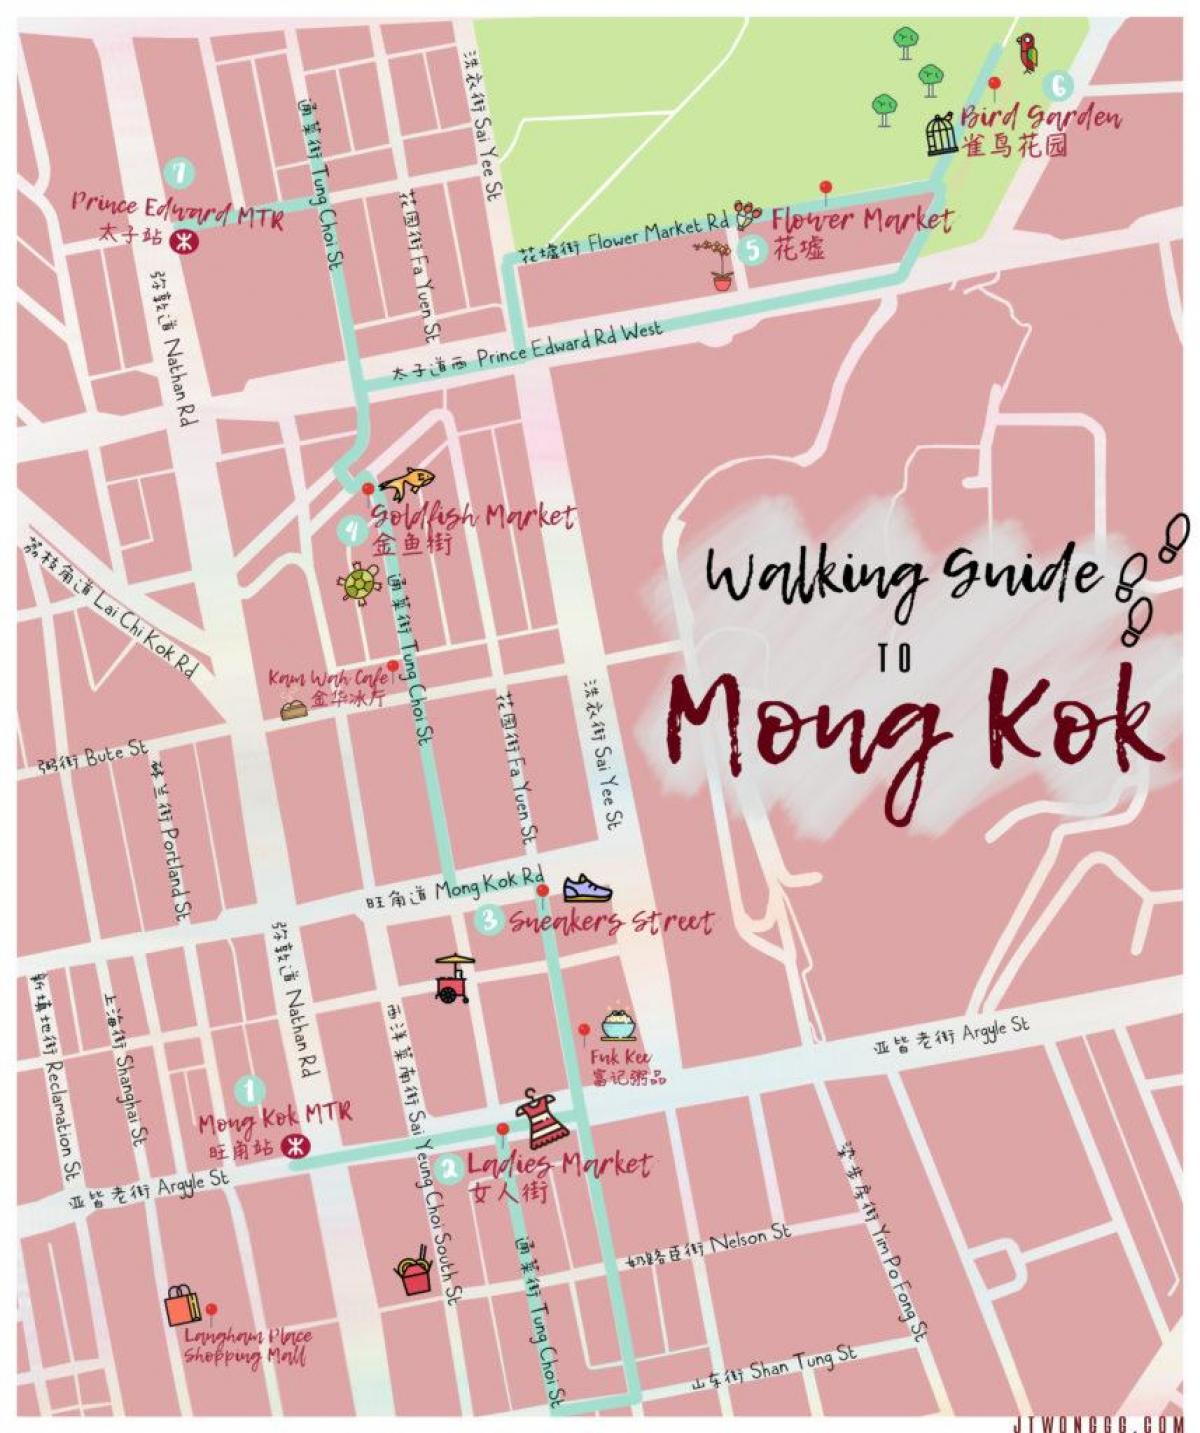 মানচিত্র Mong Kok, হংকং